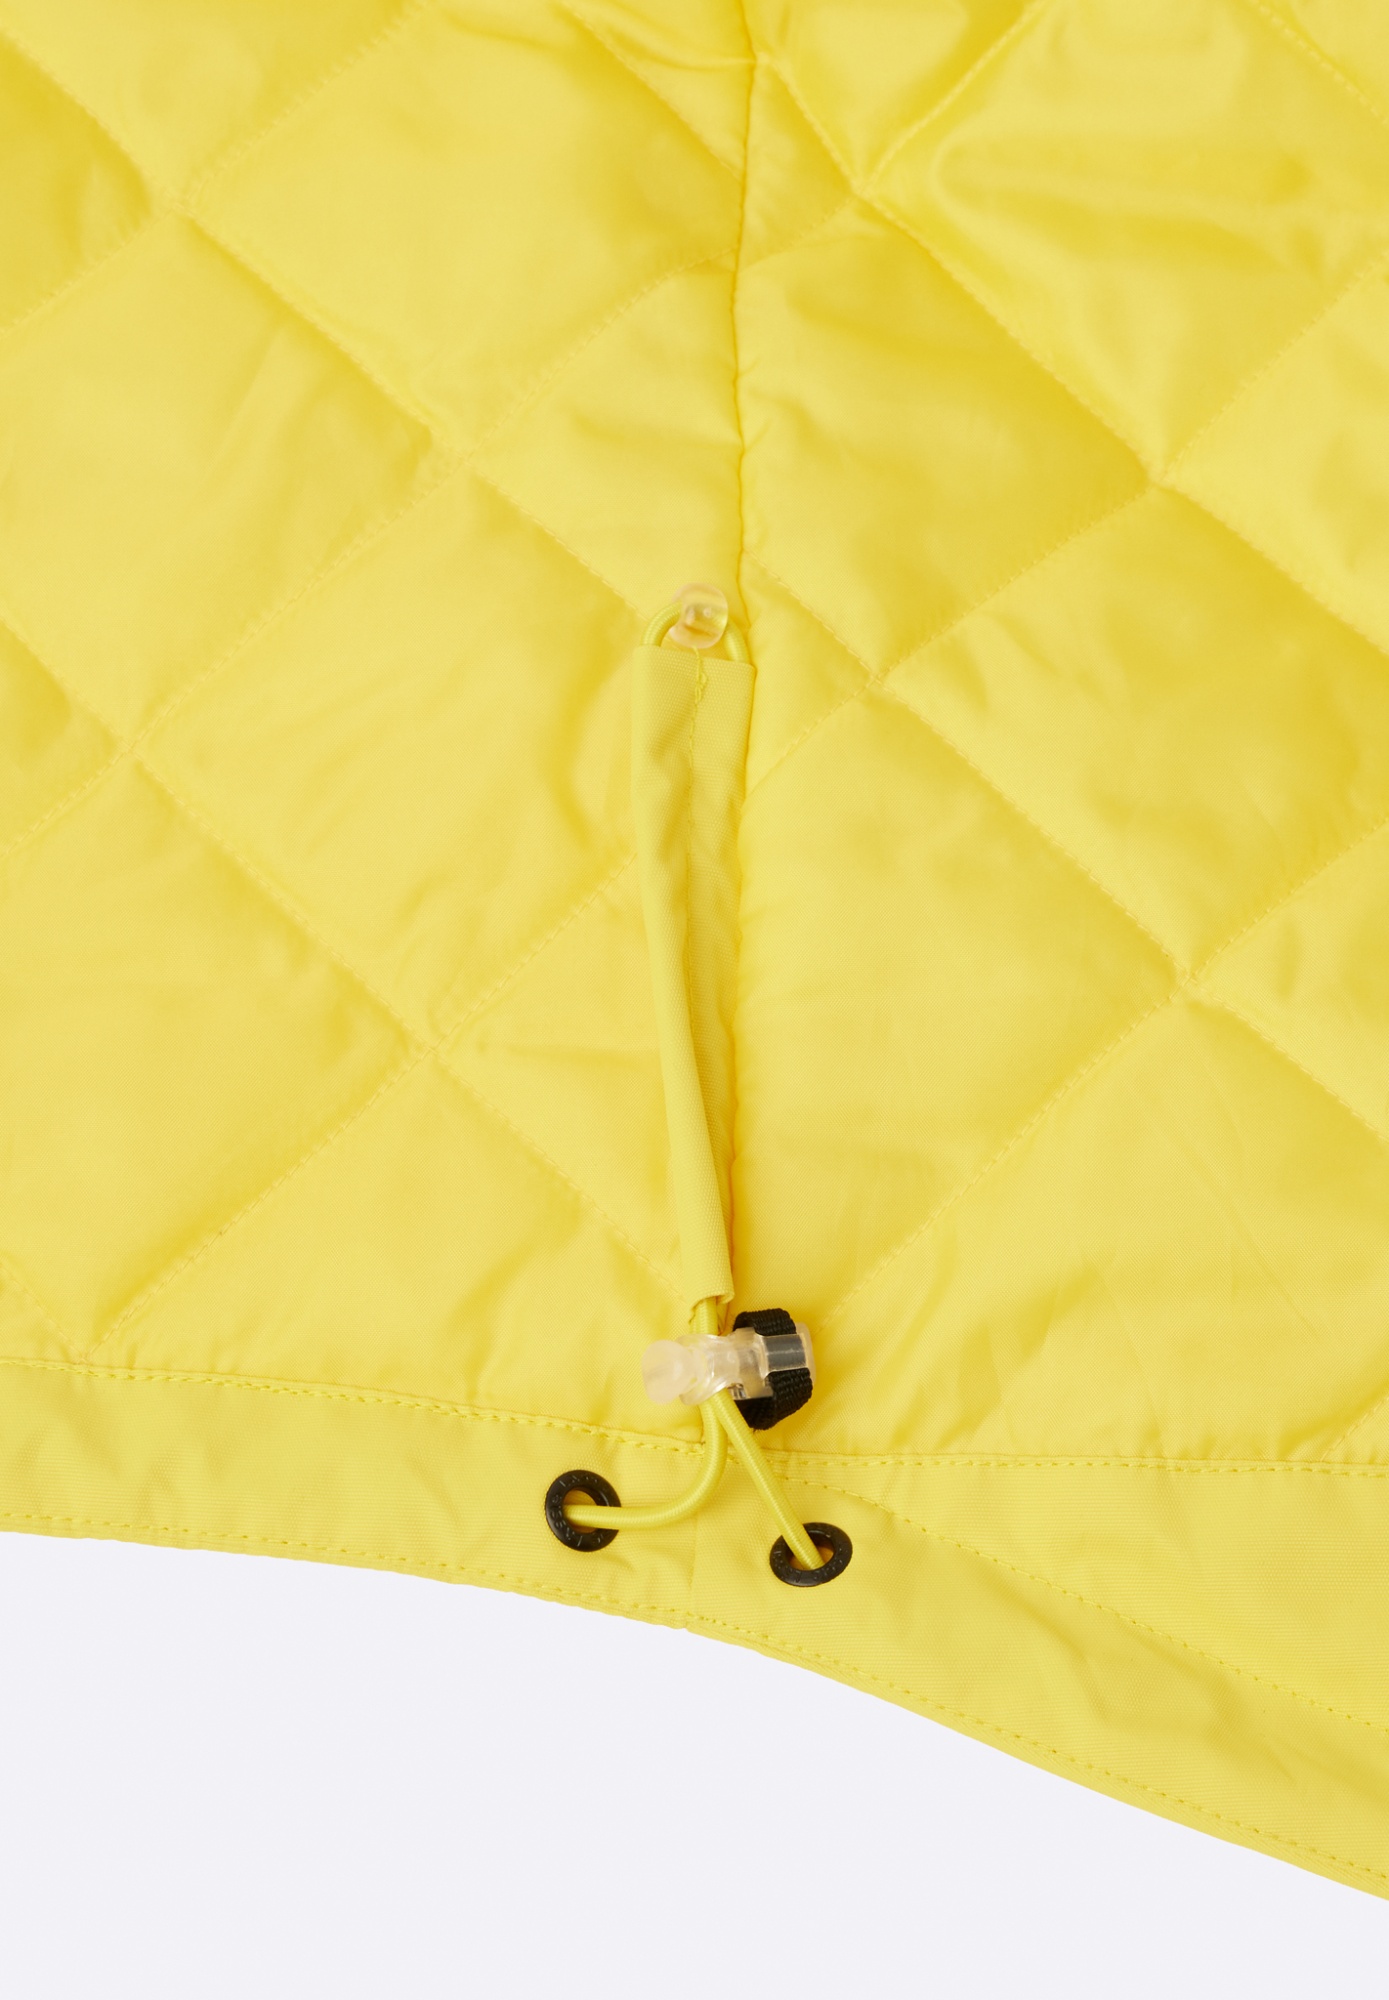 Детская утепленная куртка Lassie Symppis Желтая | фото